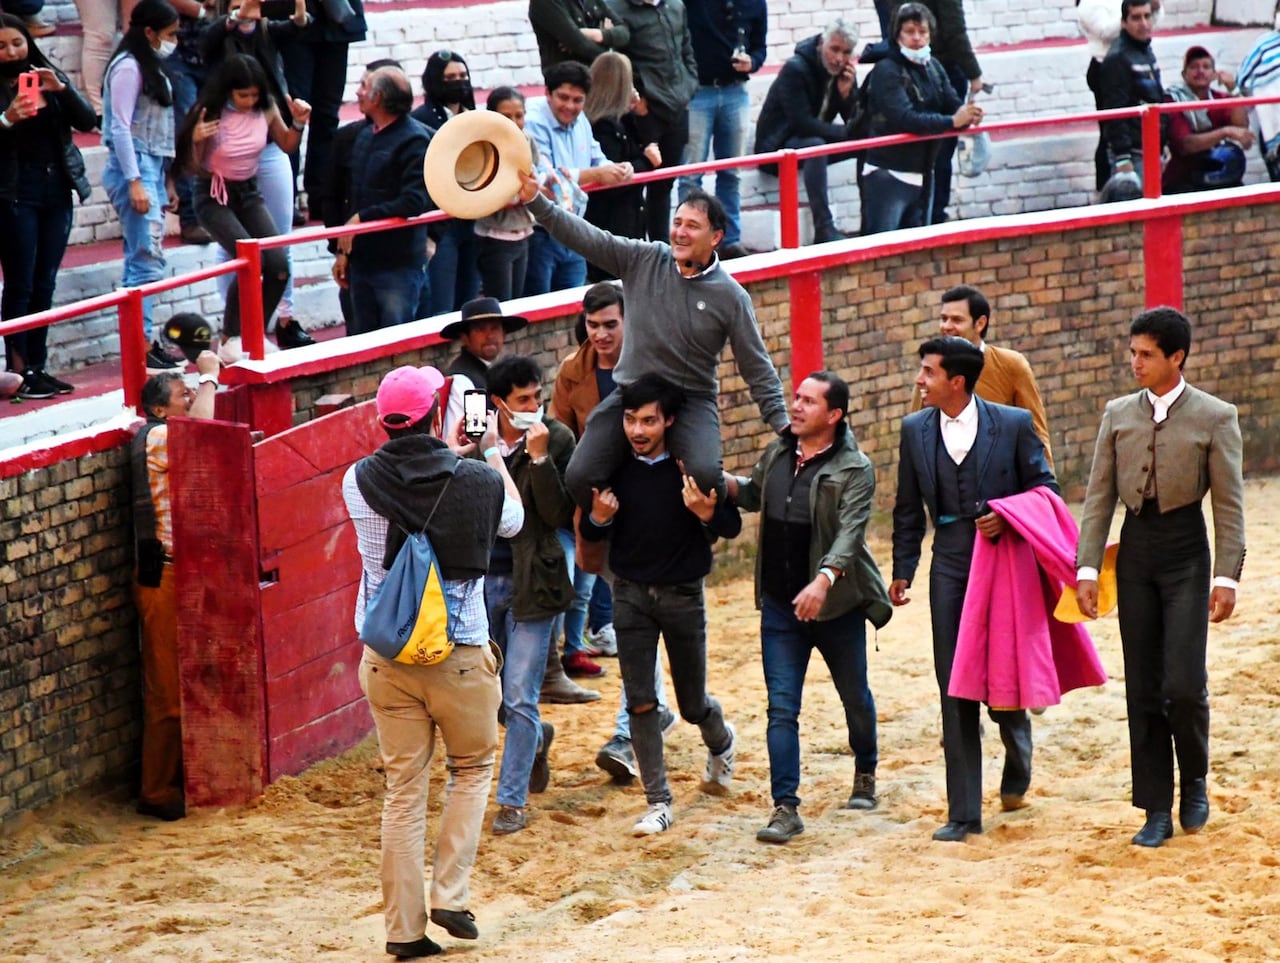 César Rincón, nacido el 5 de septiembre de 1965, del barrio Fátima de Bogotá, es el torero más importante de América, y uno de los más reconocidos maestros en la historia de la tauromaquia.